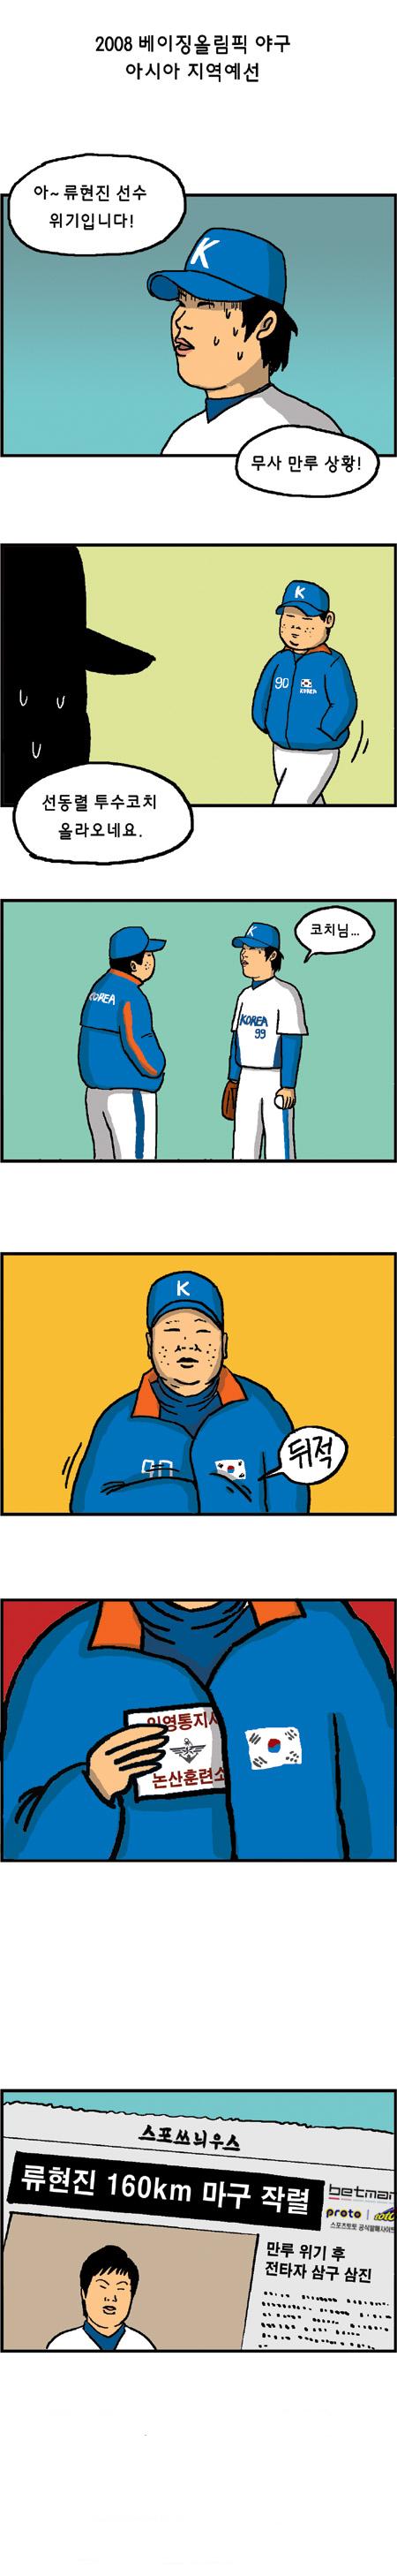 야구선수 류현진